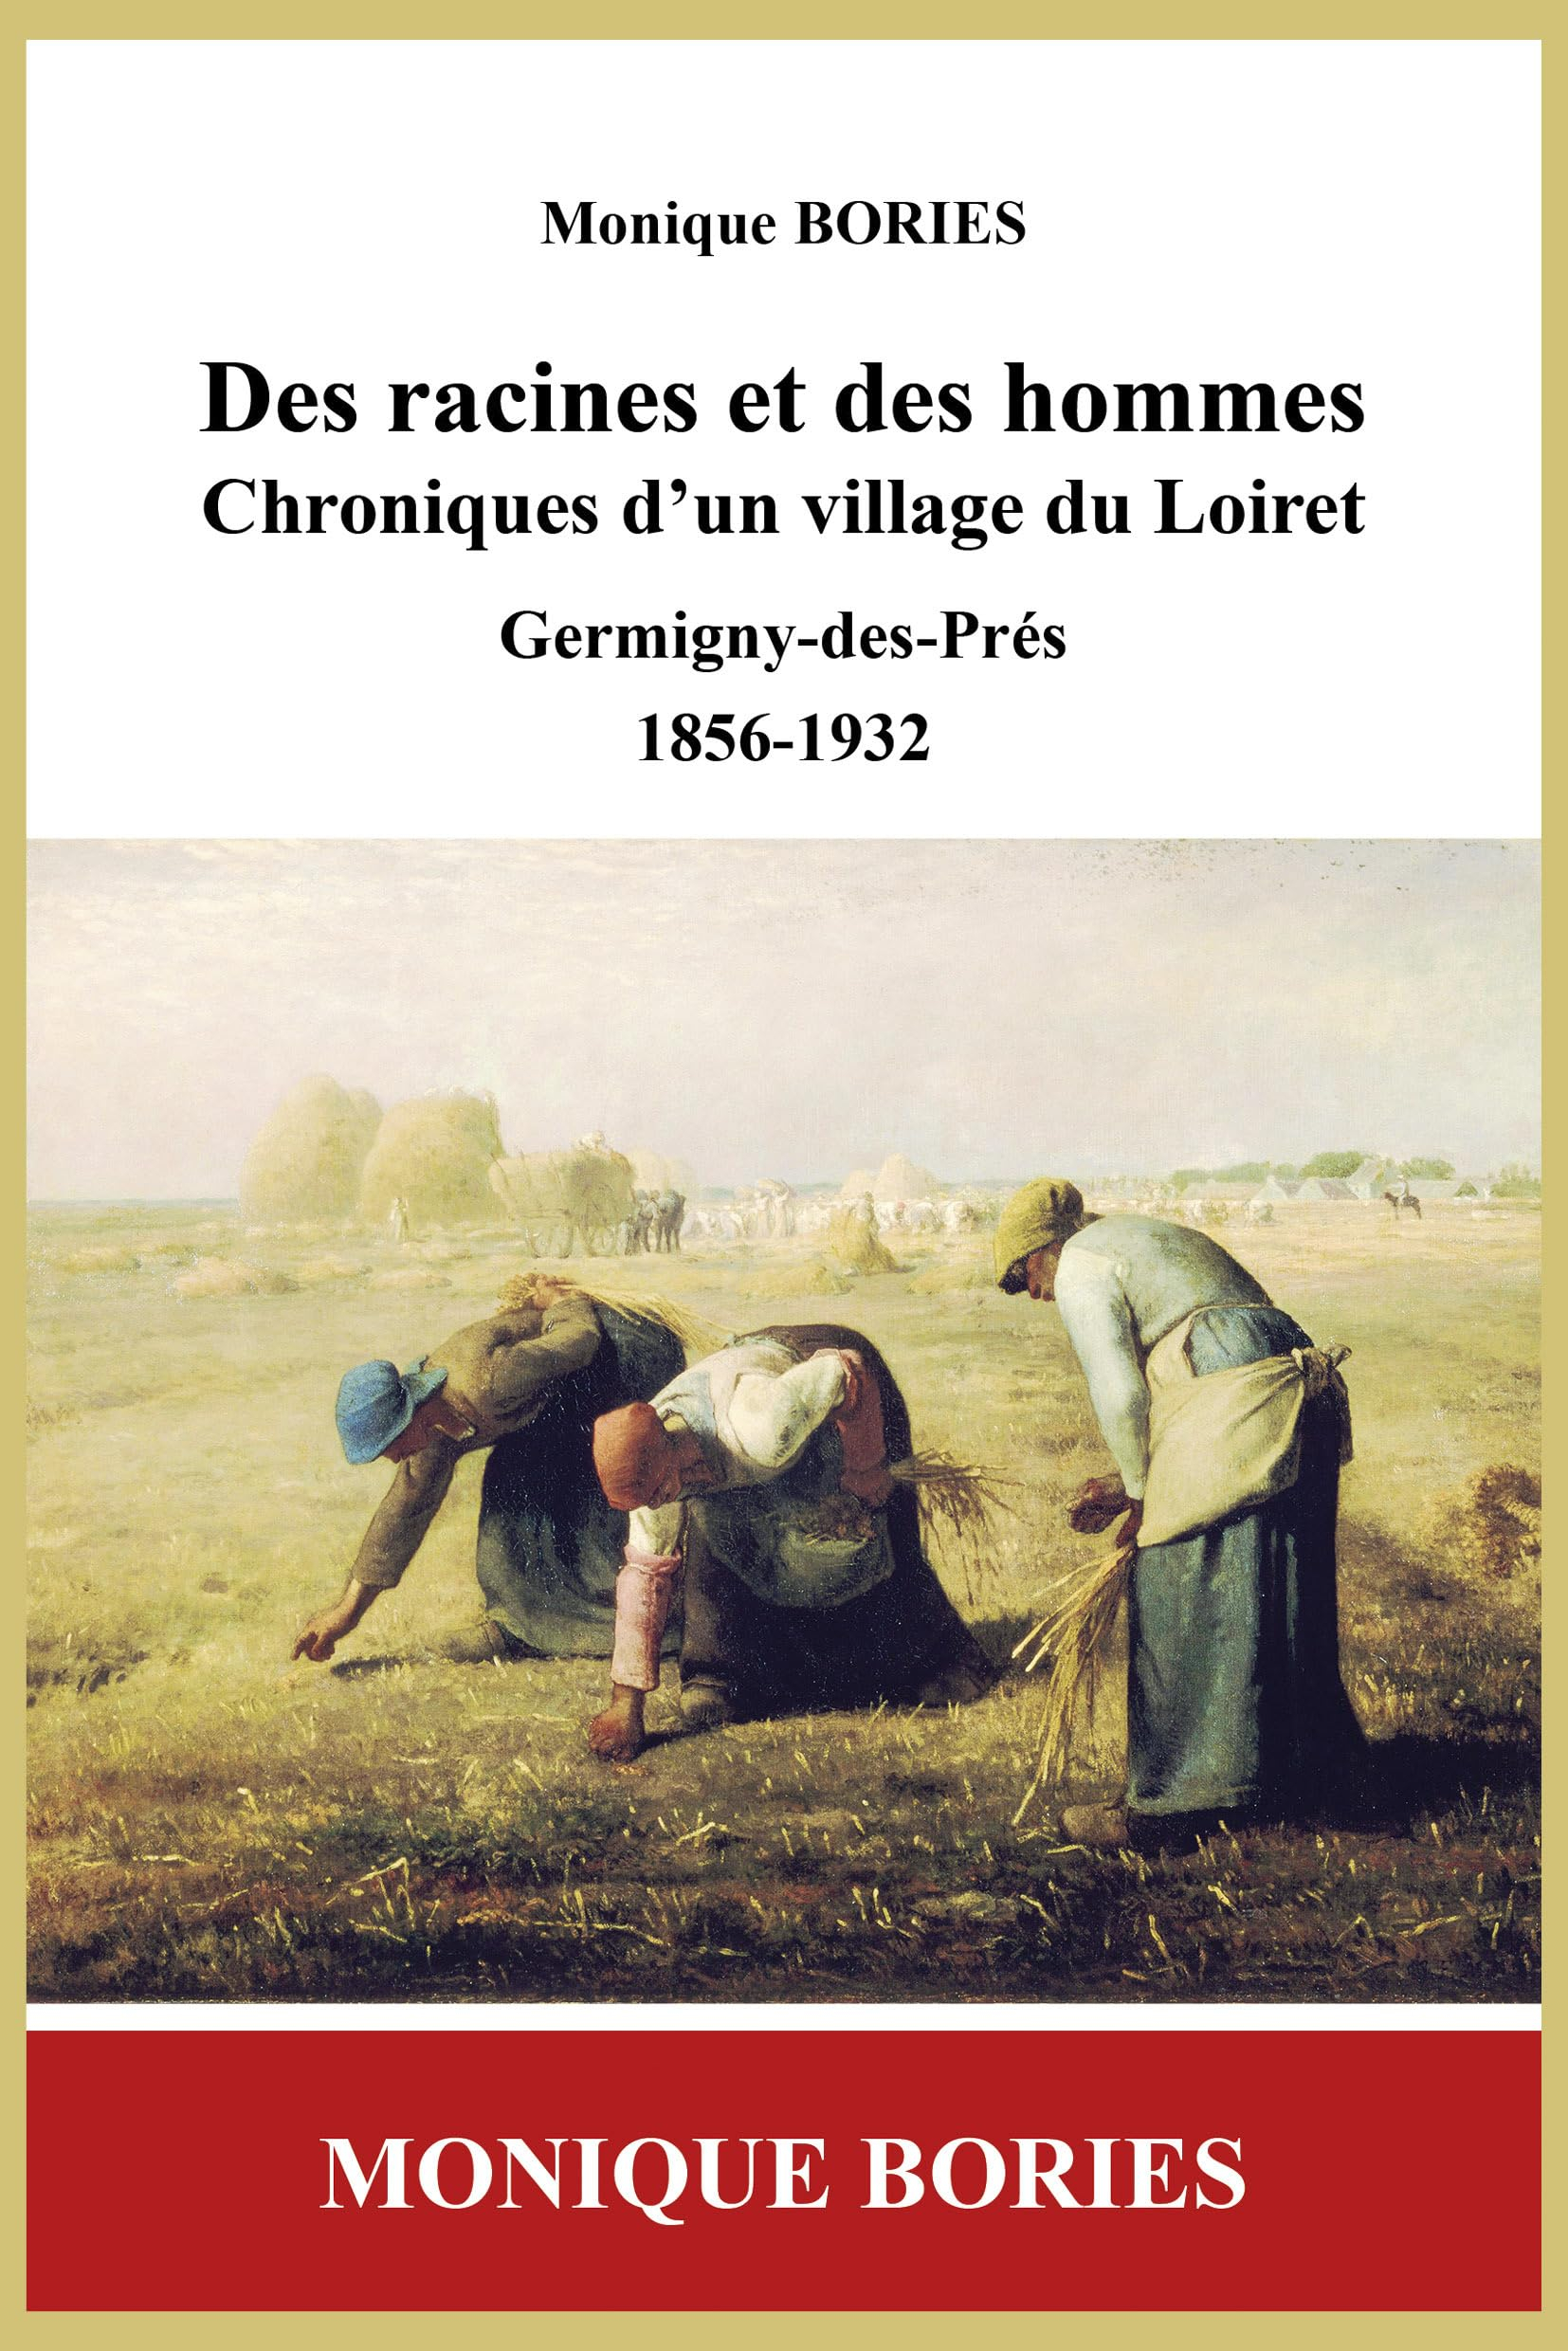 Des racines et des hommes : chroniques d'un village du Loiret : Germigny-des-Près. Vol. 1. 1856-1932